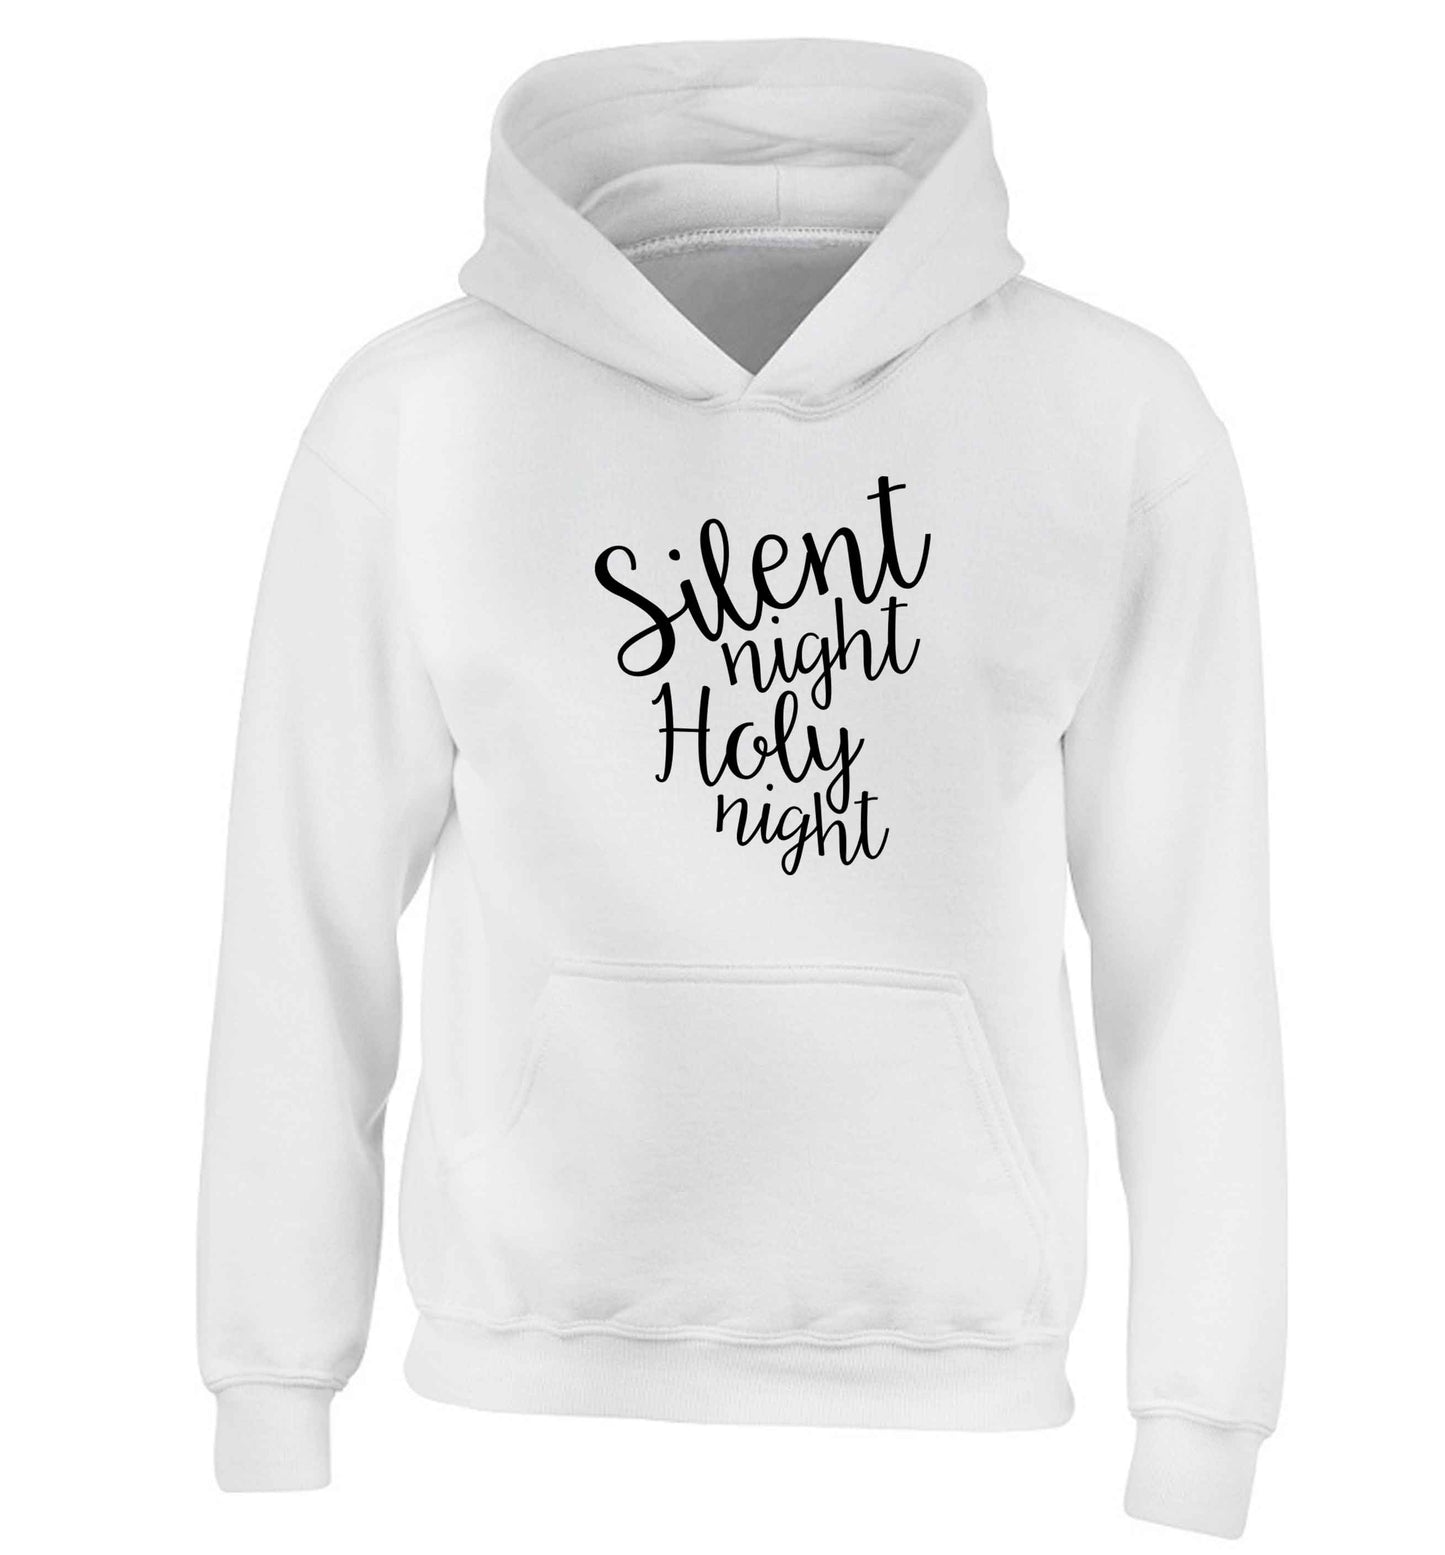 Silent night holy night children's white hoodie 12-13 Years